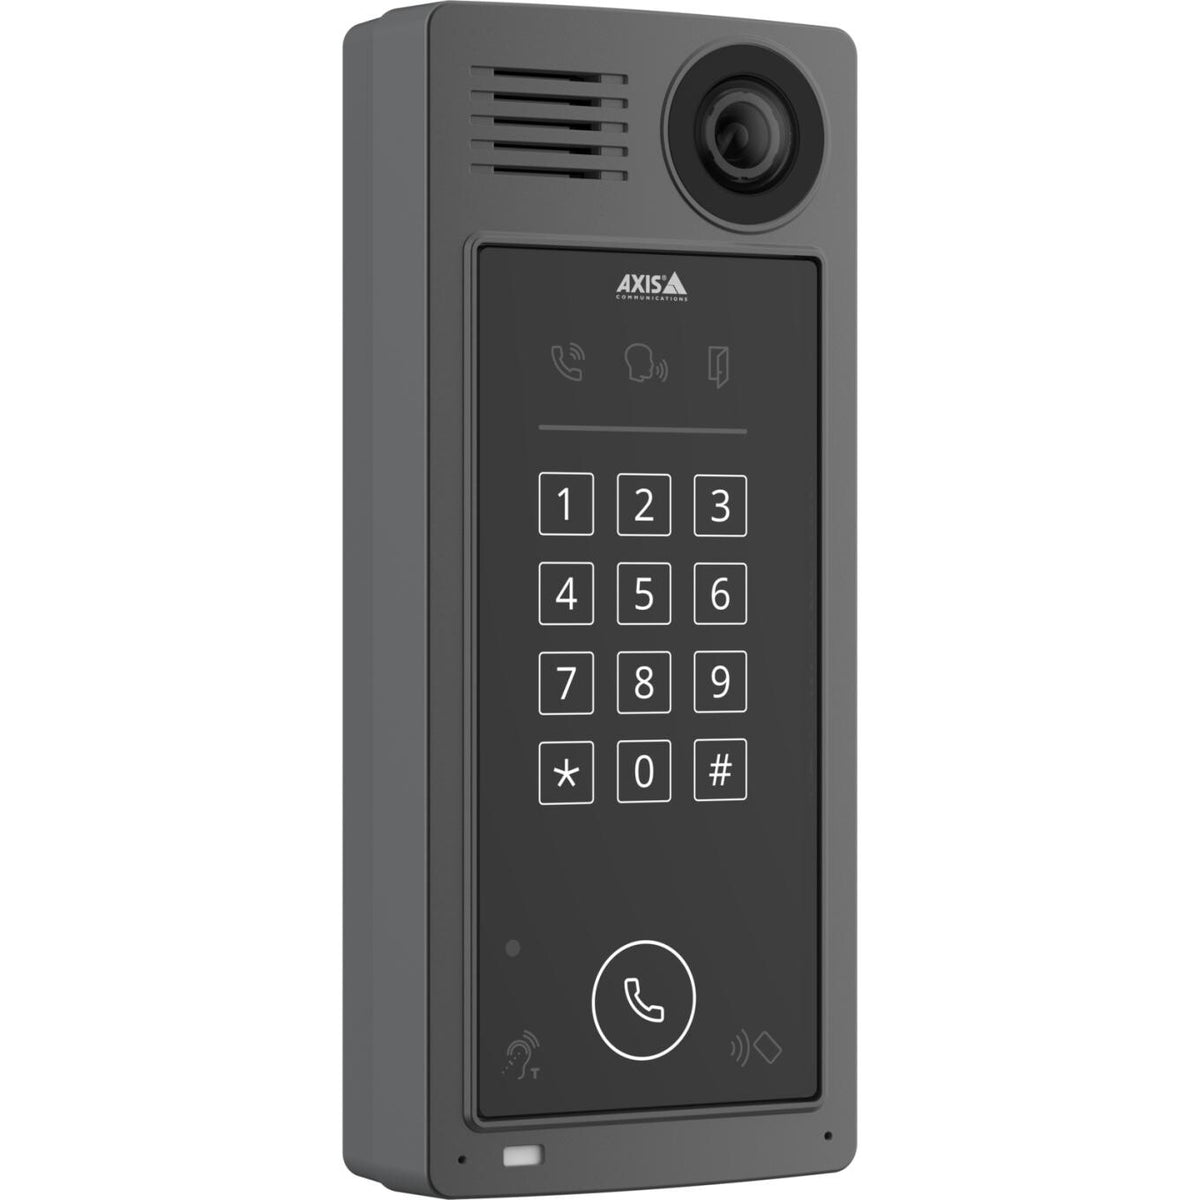 AXIS A8207-VE Mk II Network Video Door Station